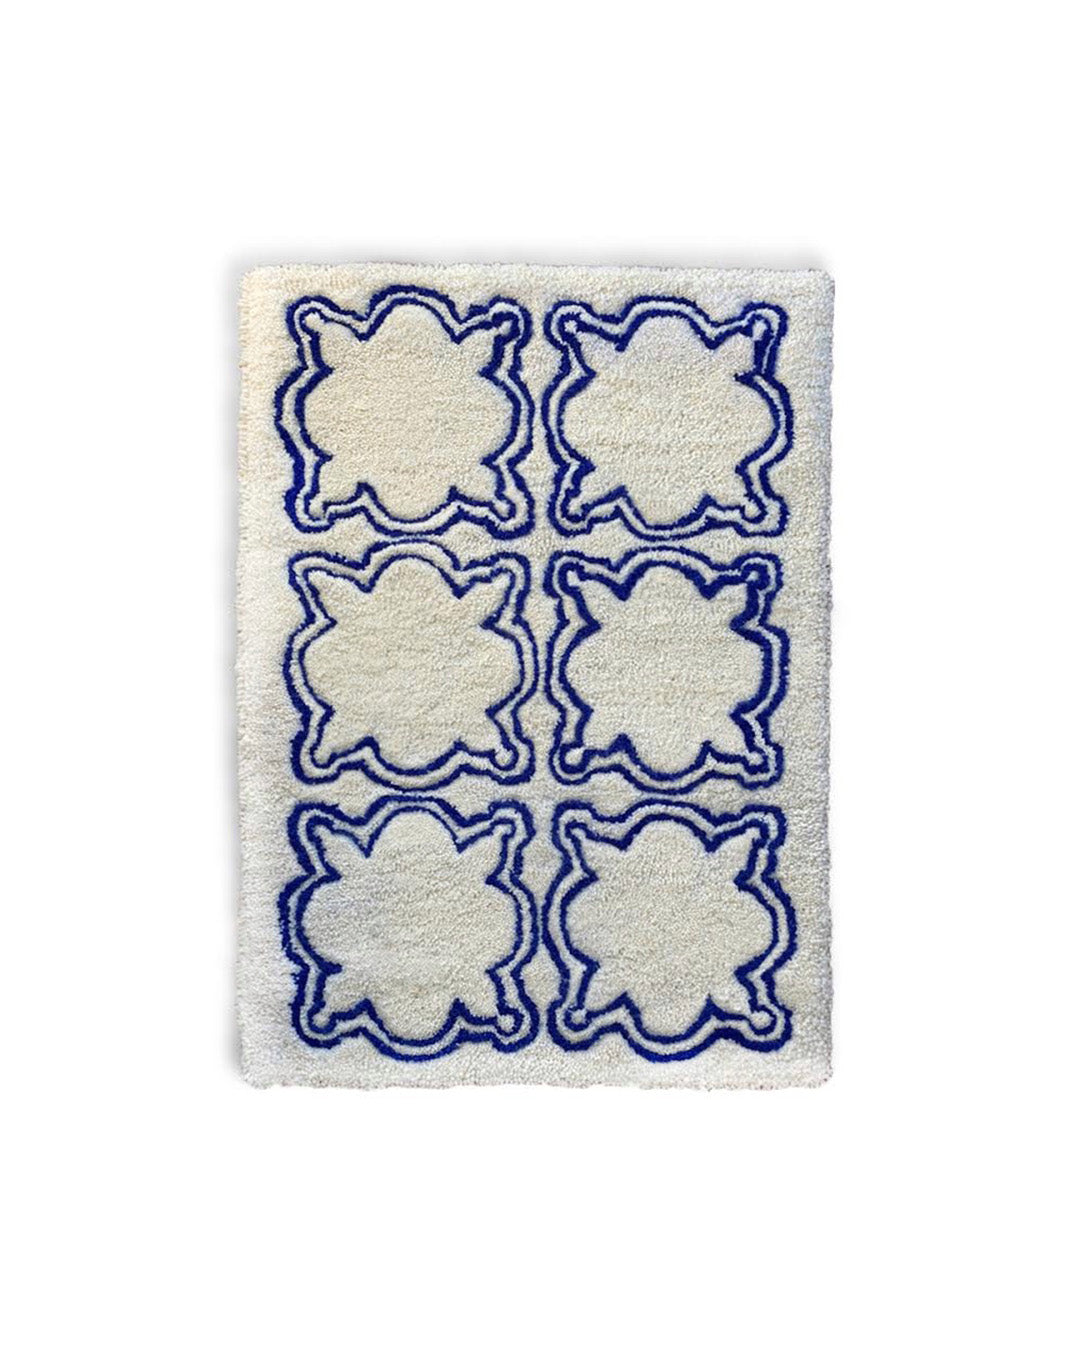 Azulejo Medieval Carpet